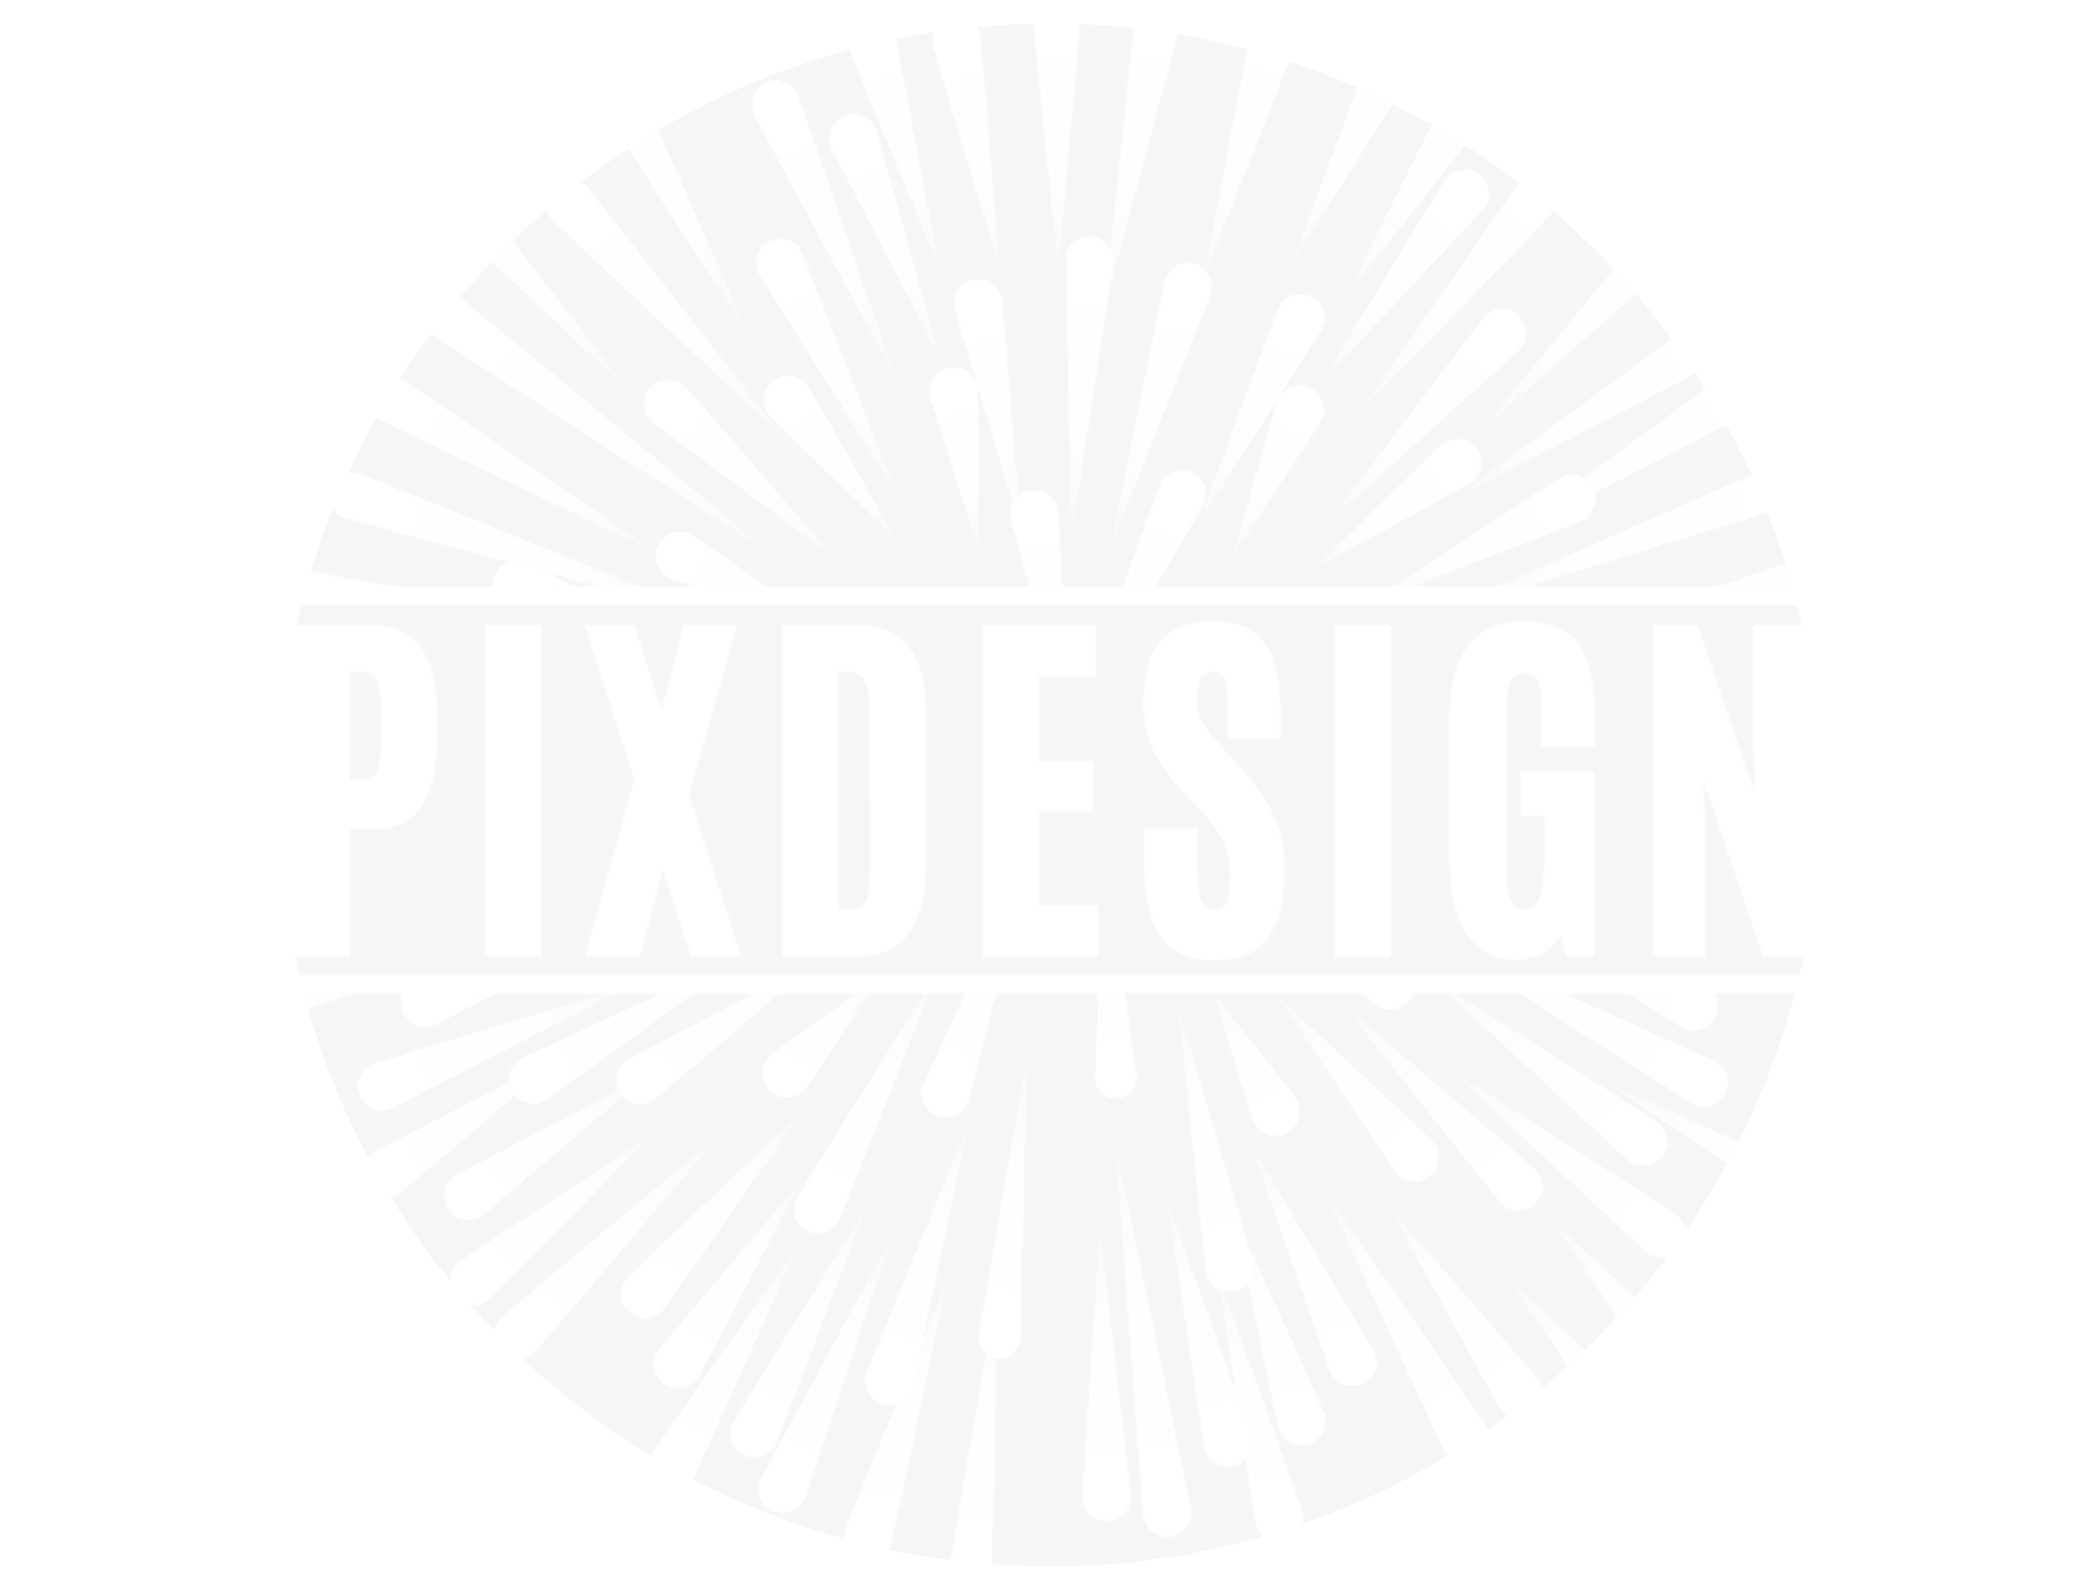 Pixdesign Onlineshop